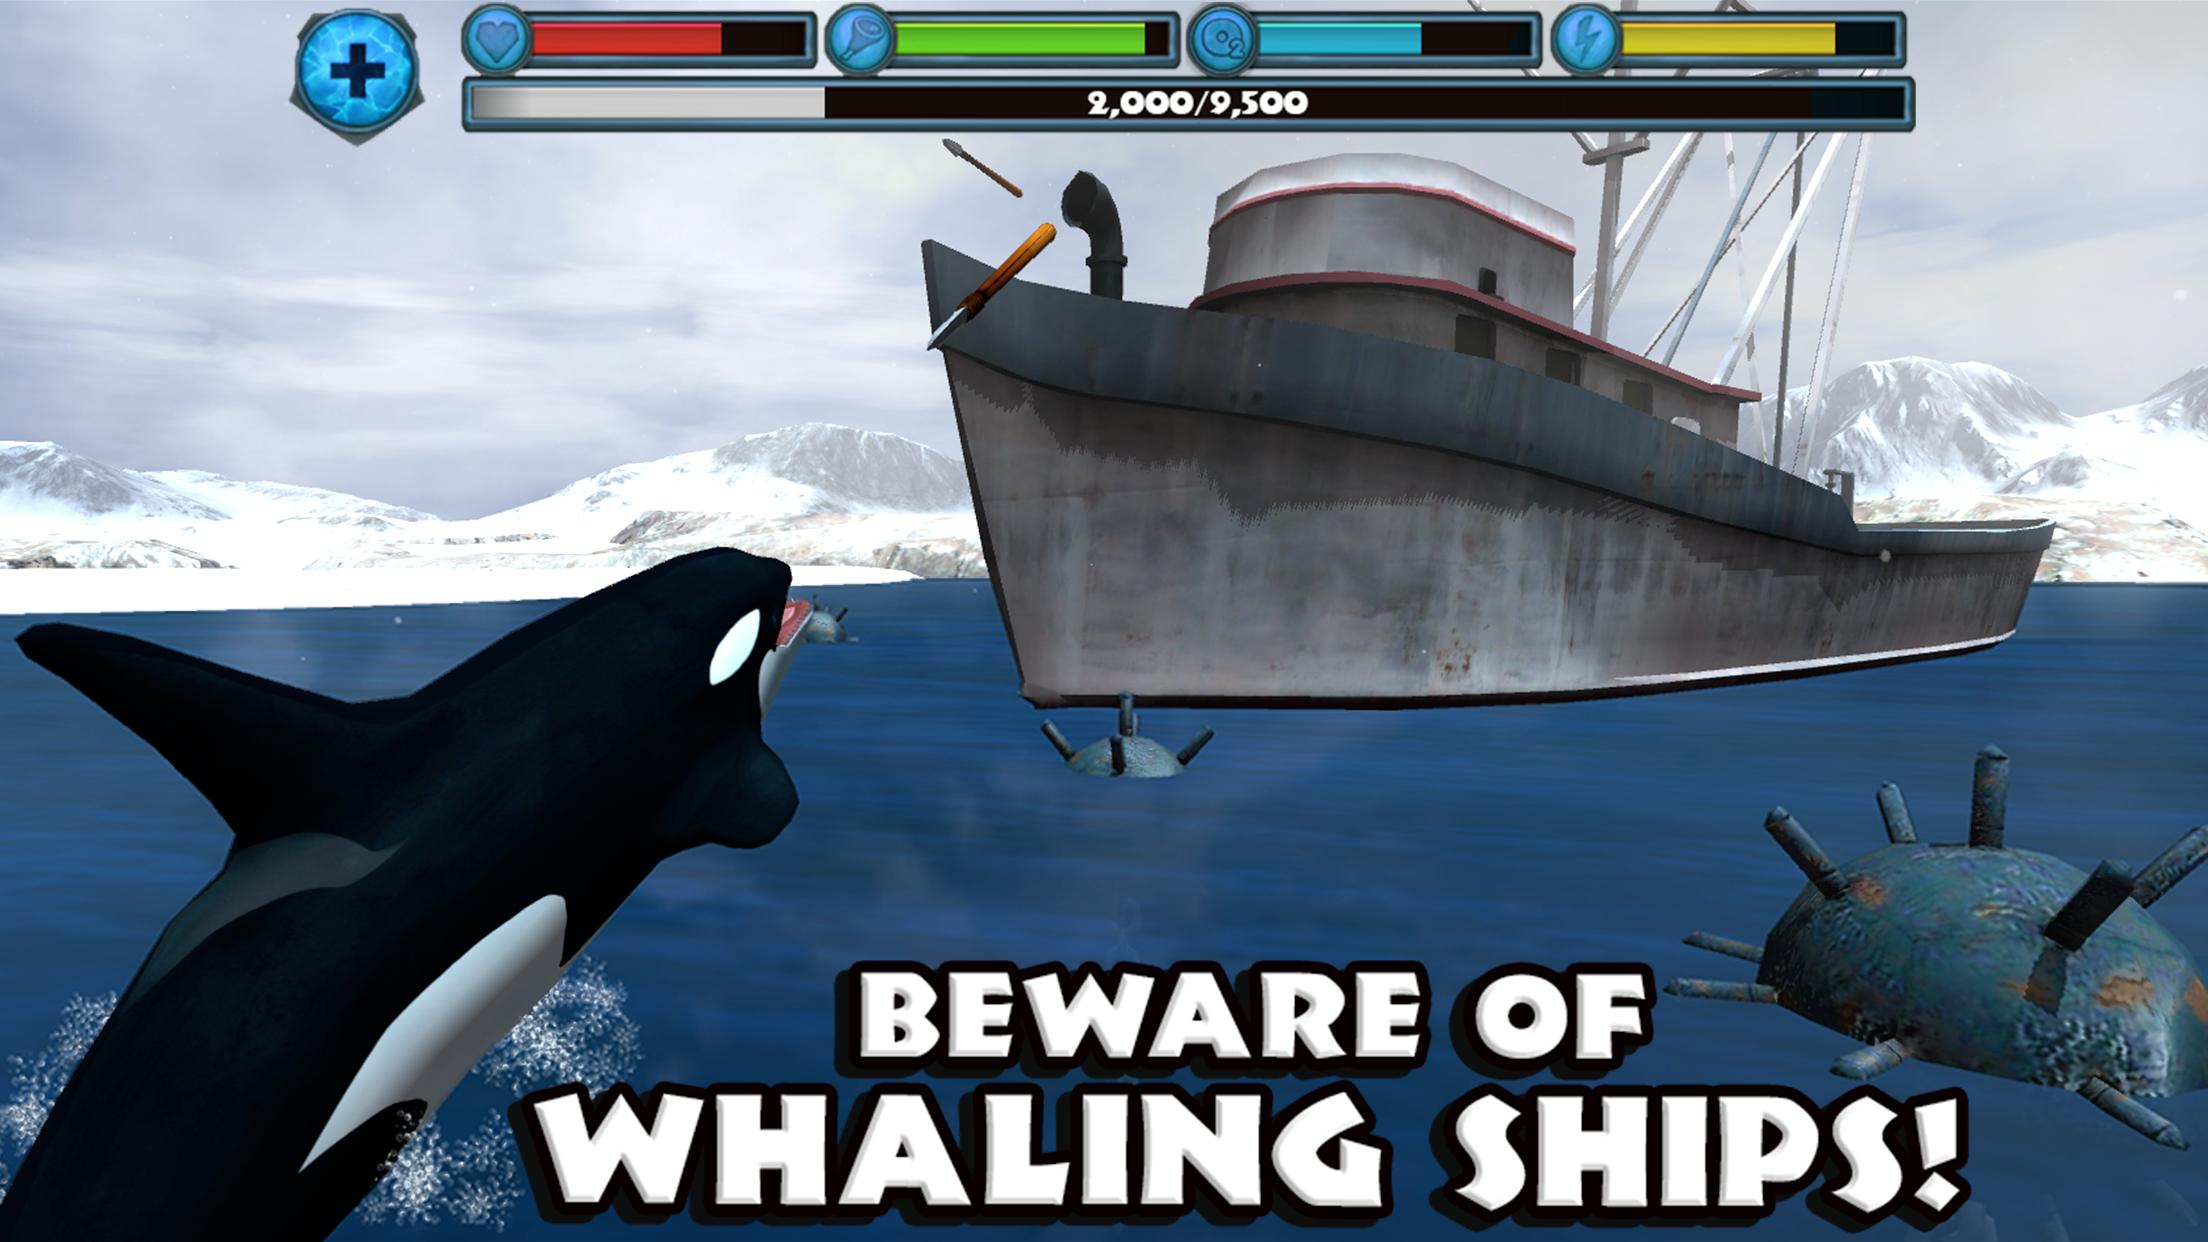 Игру симулятор кита